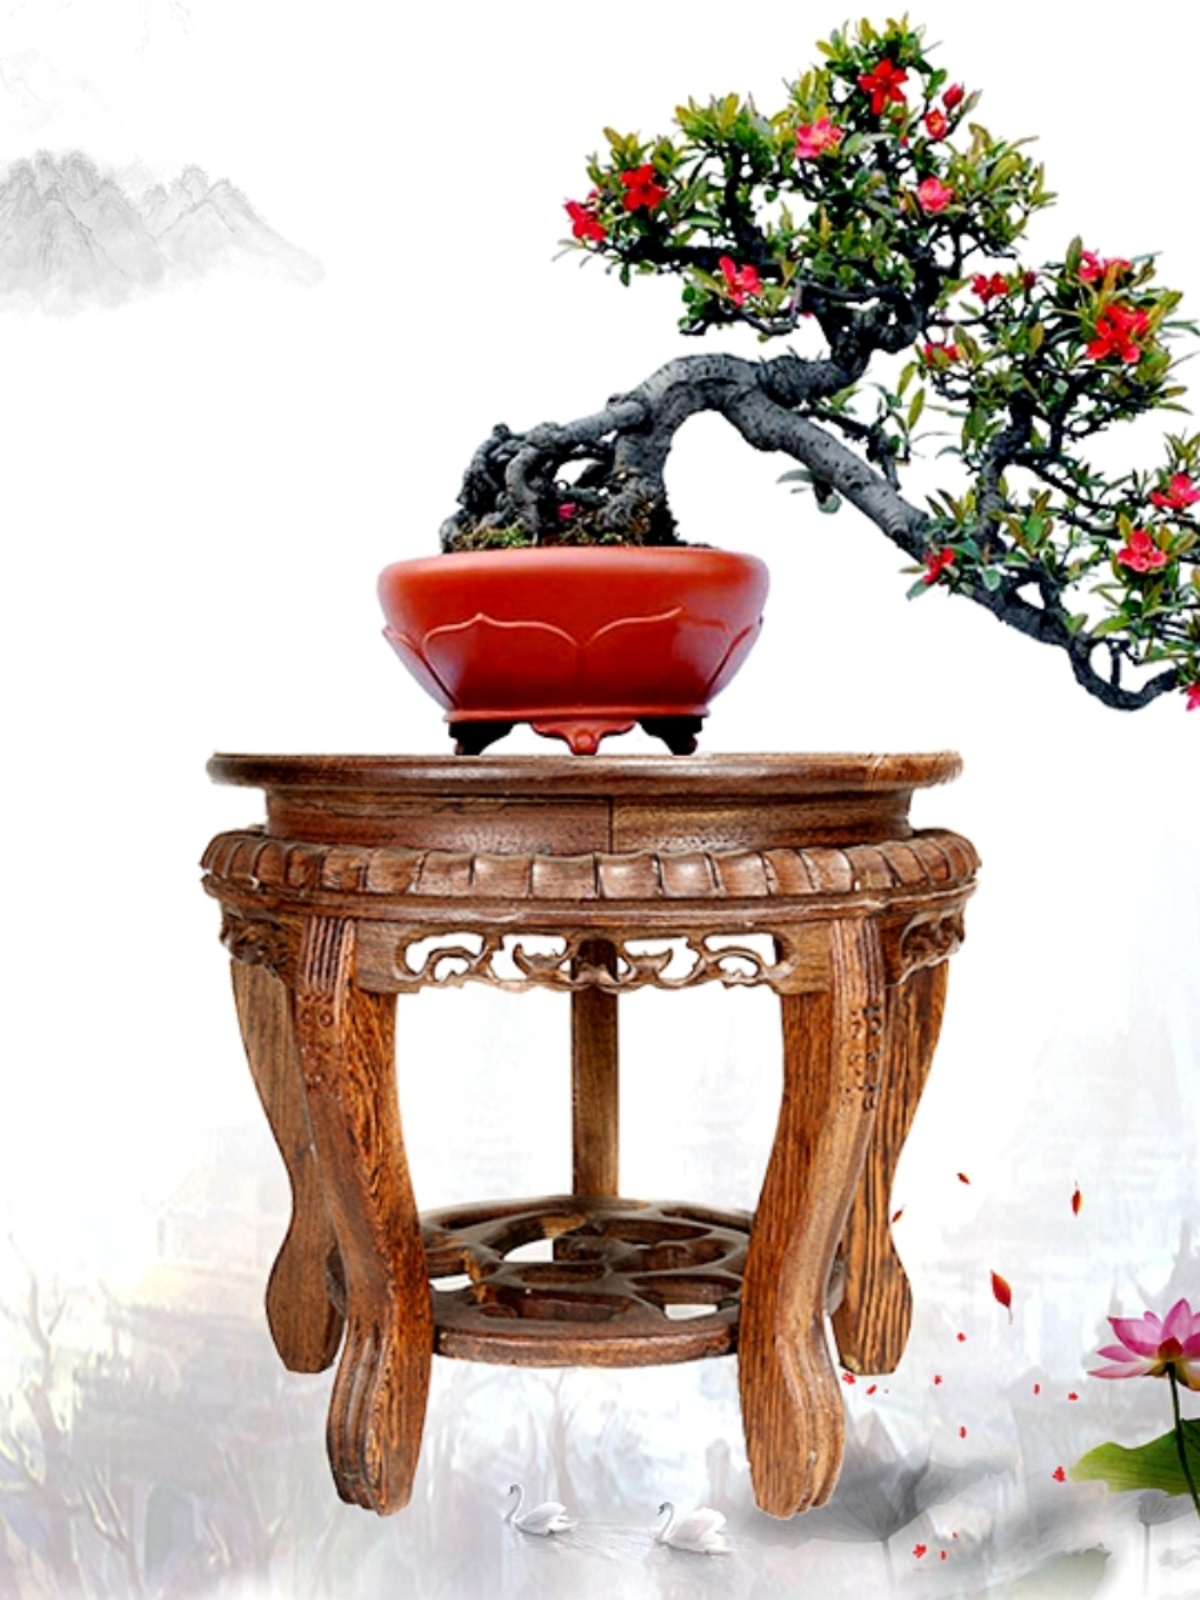 高雅雞翅木底座 花盆魚缸奇石花瓶 木頭花架 桌上擺件 (4.7折)